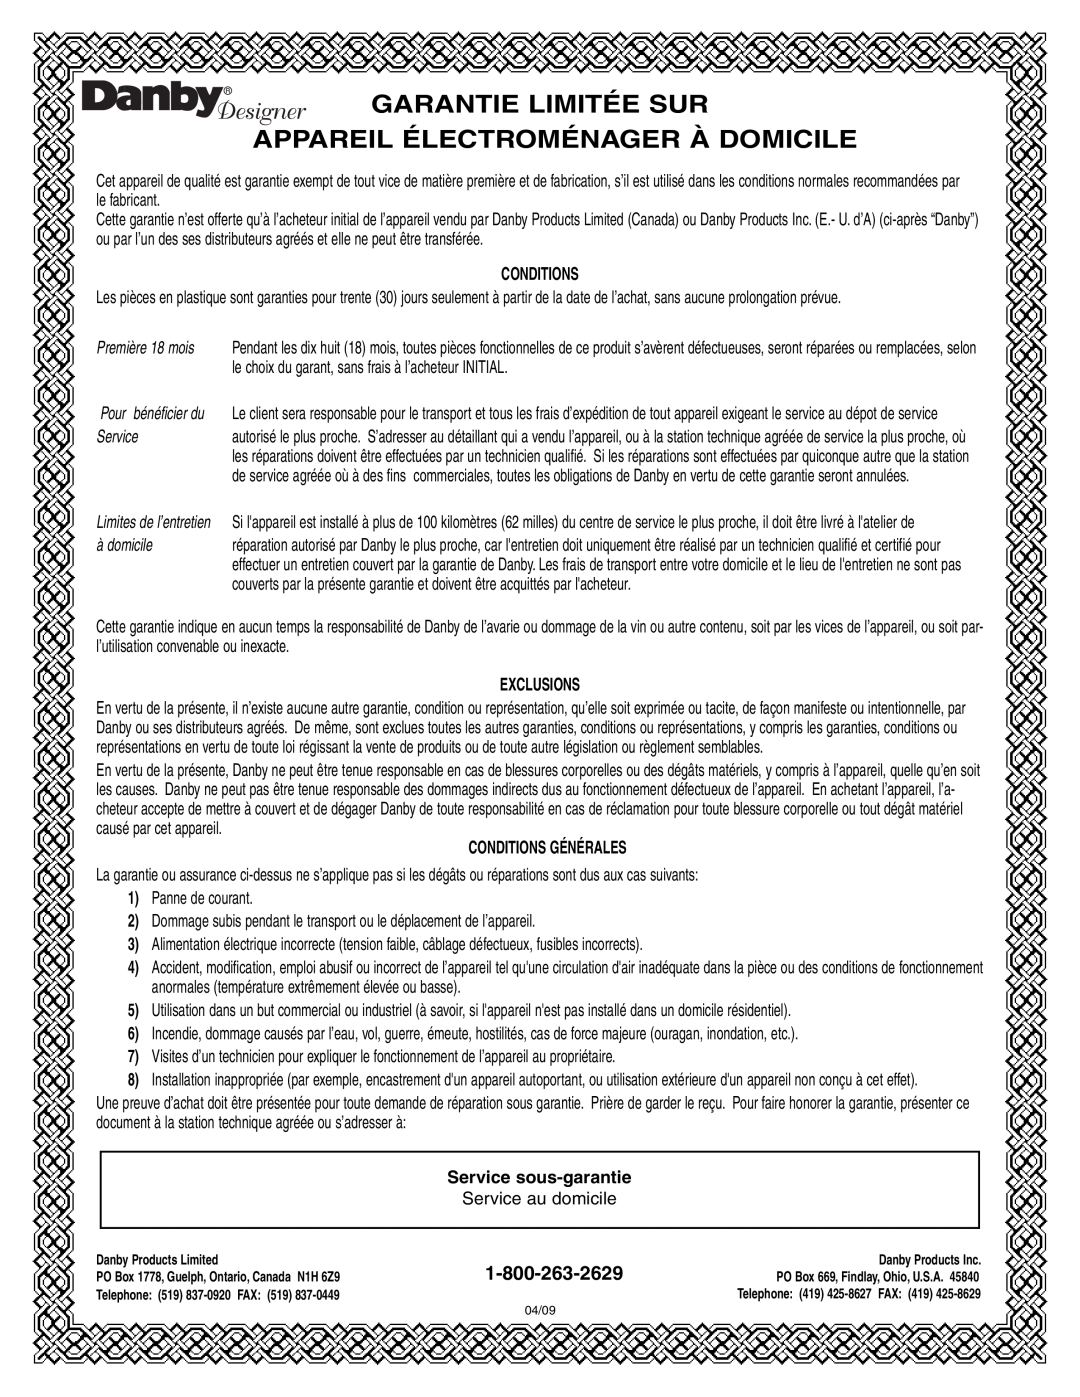 Danby DCR122BSLDD manual Garantie Limitée Sur, Appareil Électroménager À Domicile, Conditions, Première 18 mois, à domicile 